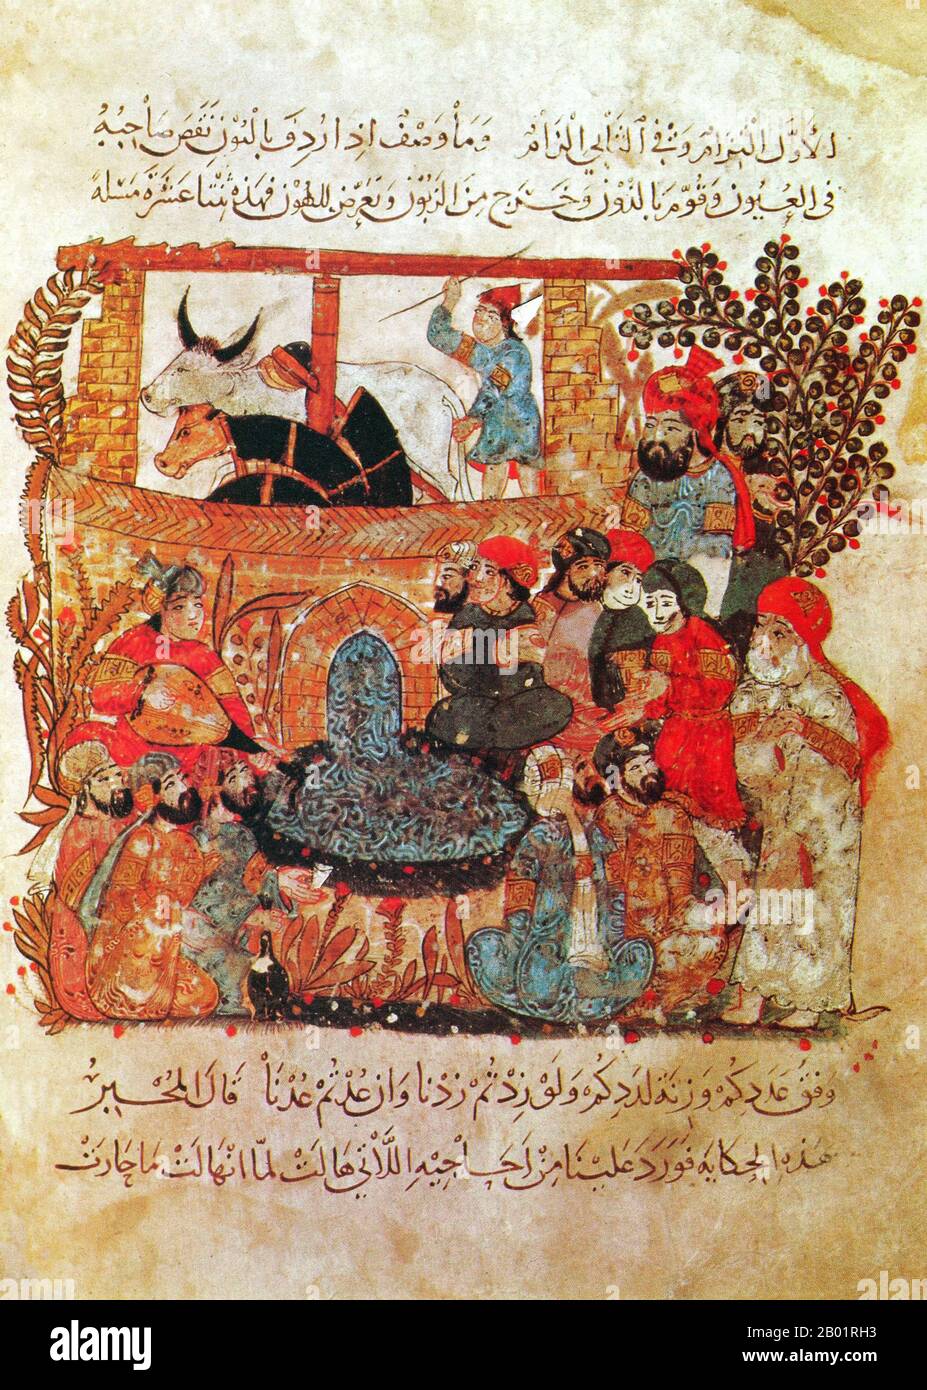 Iraq: Abu Zayd con i suoi auditor. Pittura in miniatura di Yahya ibn Mahmud al-Wasiti, 1237 d.C. Yahyâ ibn Mahmûd al-Wâsitî è stato un artista arabo islamico del XIII secolo. Al-Wasiti è nato a Wasit, nel sud dell'Iraq. Era noto per le sue illustrazioni del Maqam di al-Hariri. I Maqāma (letteralmente "assemblee") sono un genere letterario arabo (originariamente) di prosa rimata con intervalli di poesia in cui la stravaganza retorica è evidente. Si dice che l'autore del X secolo Badī' al-Zaman al-Hamadhāni abbia inventato la forma, che fu estesa da al-Hariri di Bassora nel secolo successivo. Foto Stock